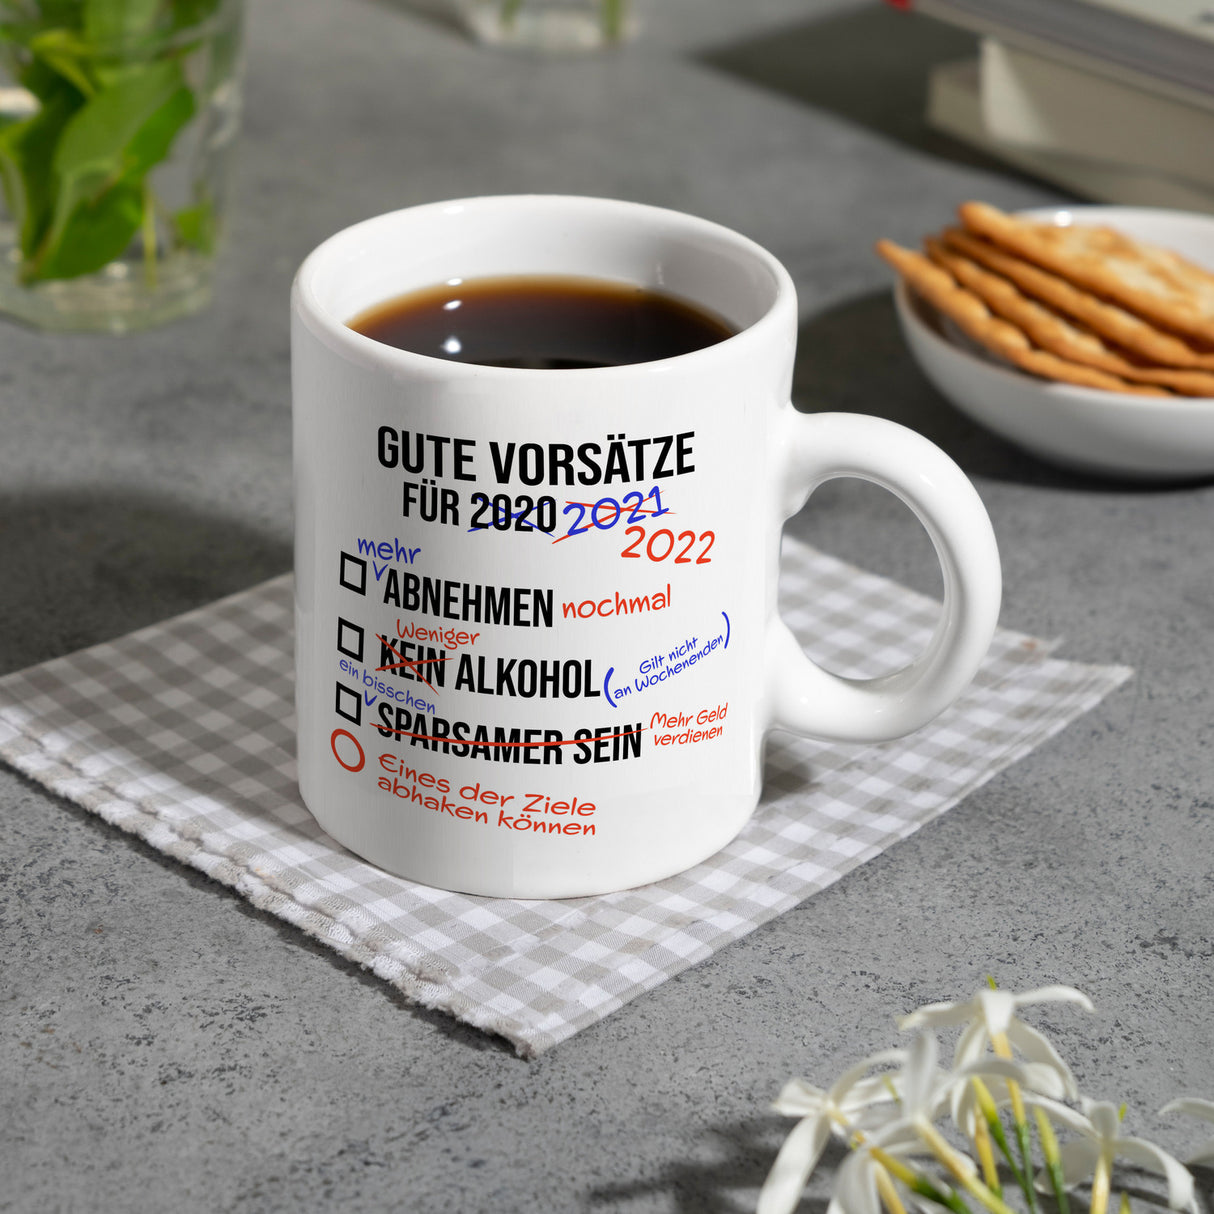 Gute Vorsätze für 2022 Kaffeebecher mit lustigem Spruch